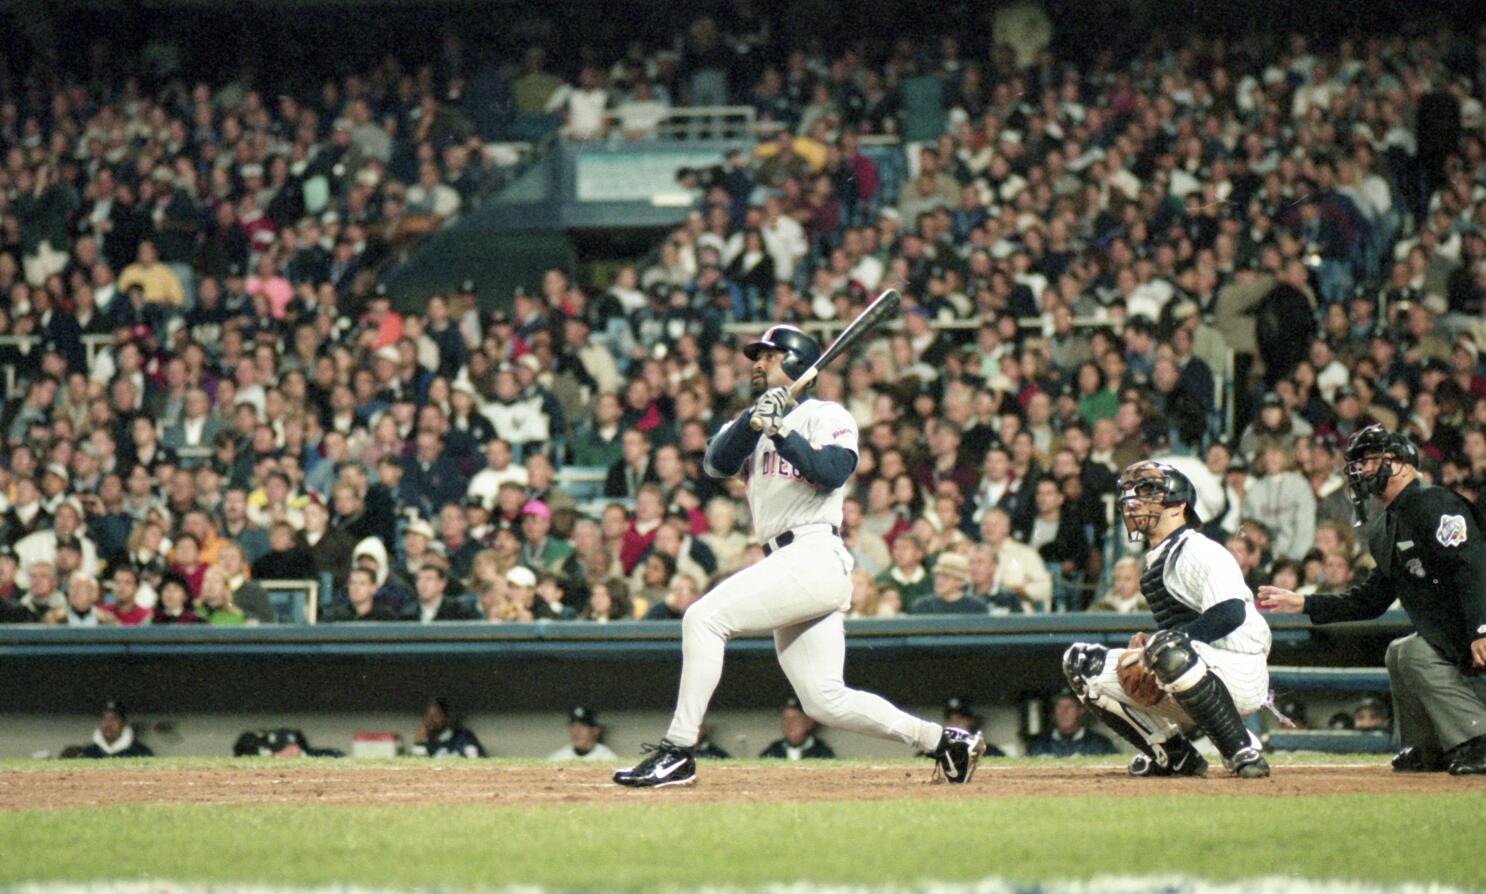 1998 Yankees World Series: Tino Martinez grand slam has 25th